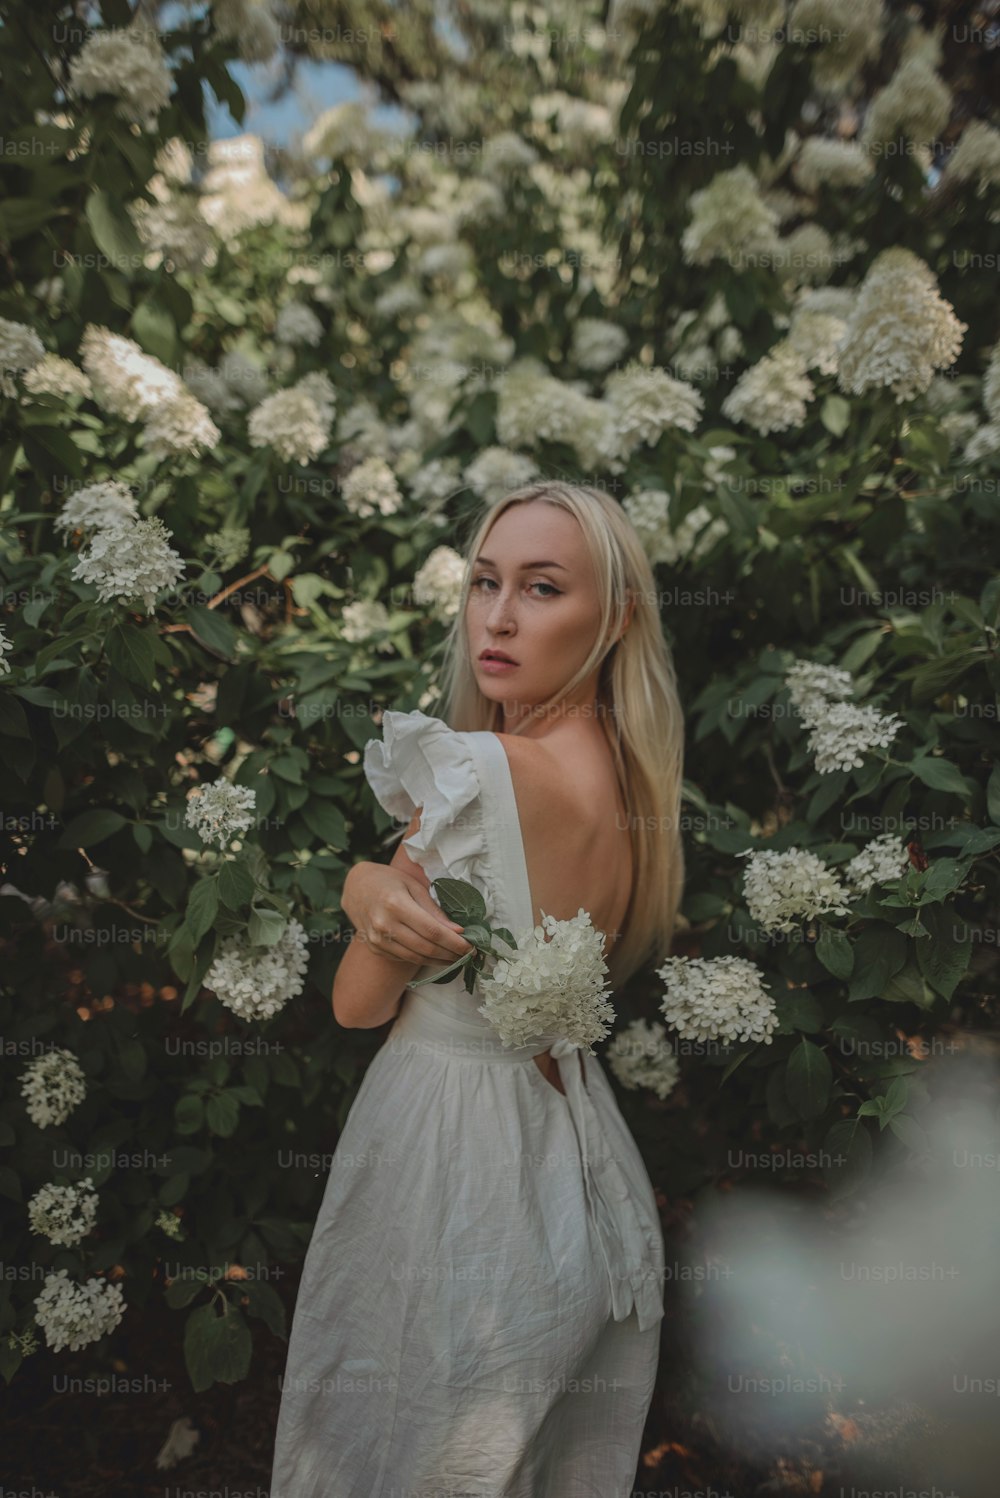 Una mujer parada frente a un arbusto con flores blancas